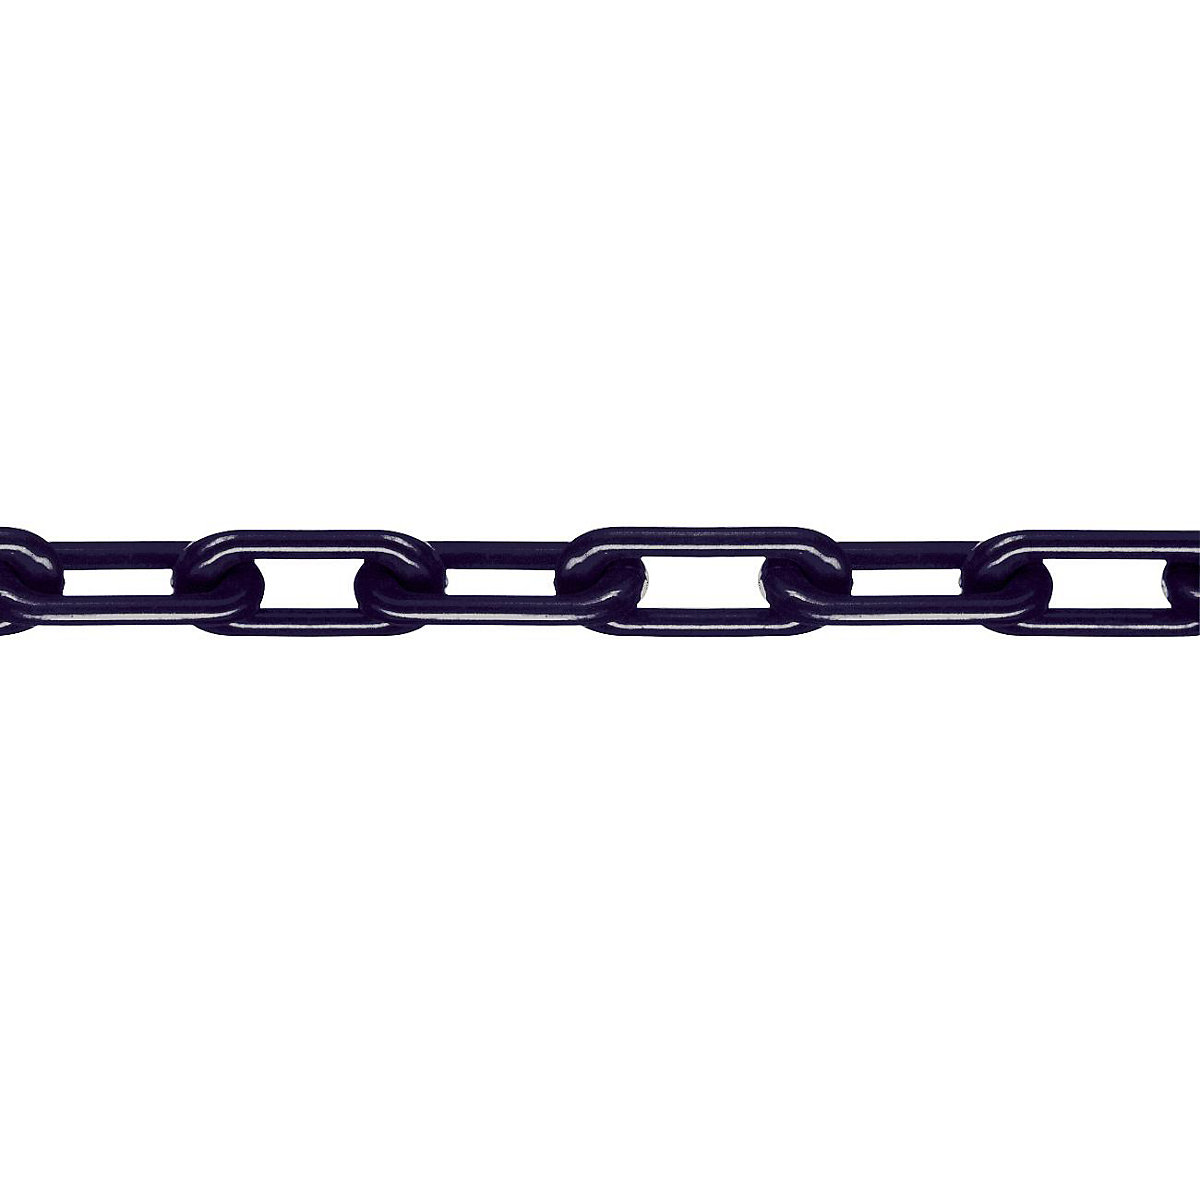 Minőségi nylon lánc, MNK-minőség 8, köteghossz 25 m, fekete, 4 darabtól-3